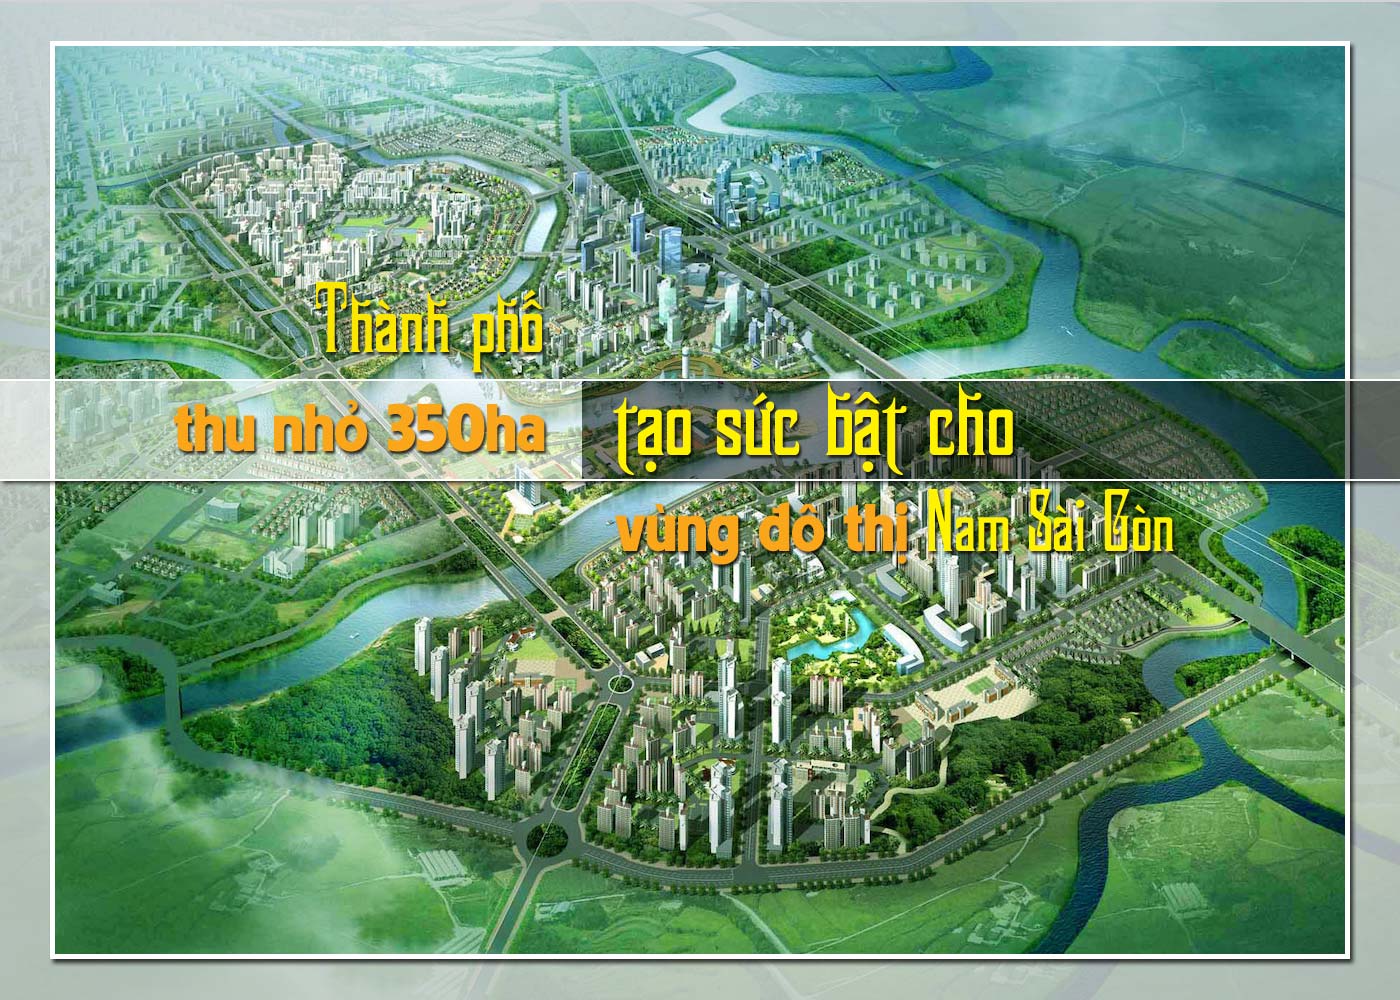 Thành phố thu nhỏ 350ha tạo sức bật cho vùng đô thị Nam Sài Gòn - Ảnh 1